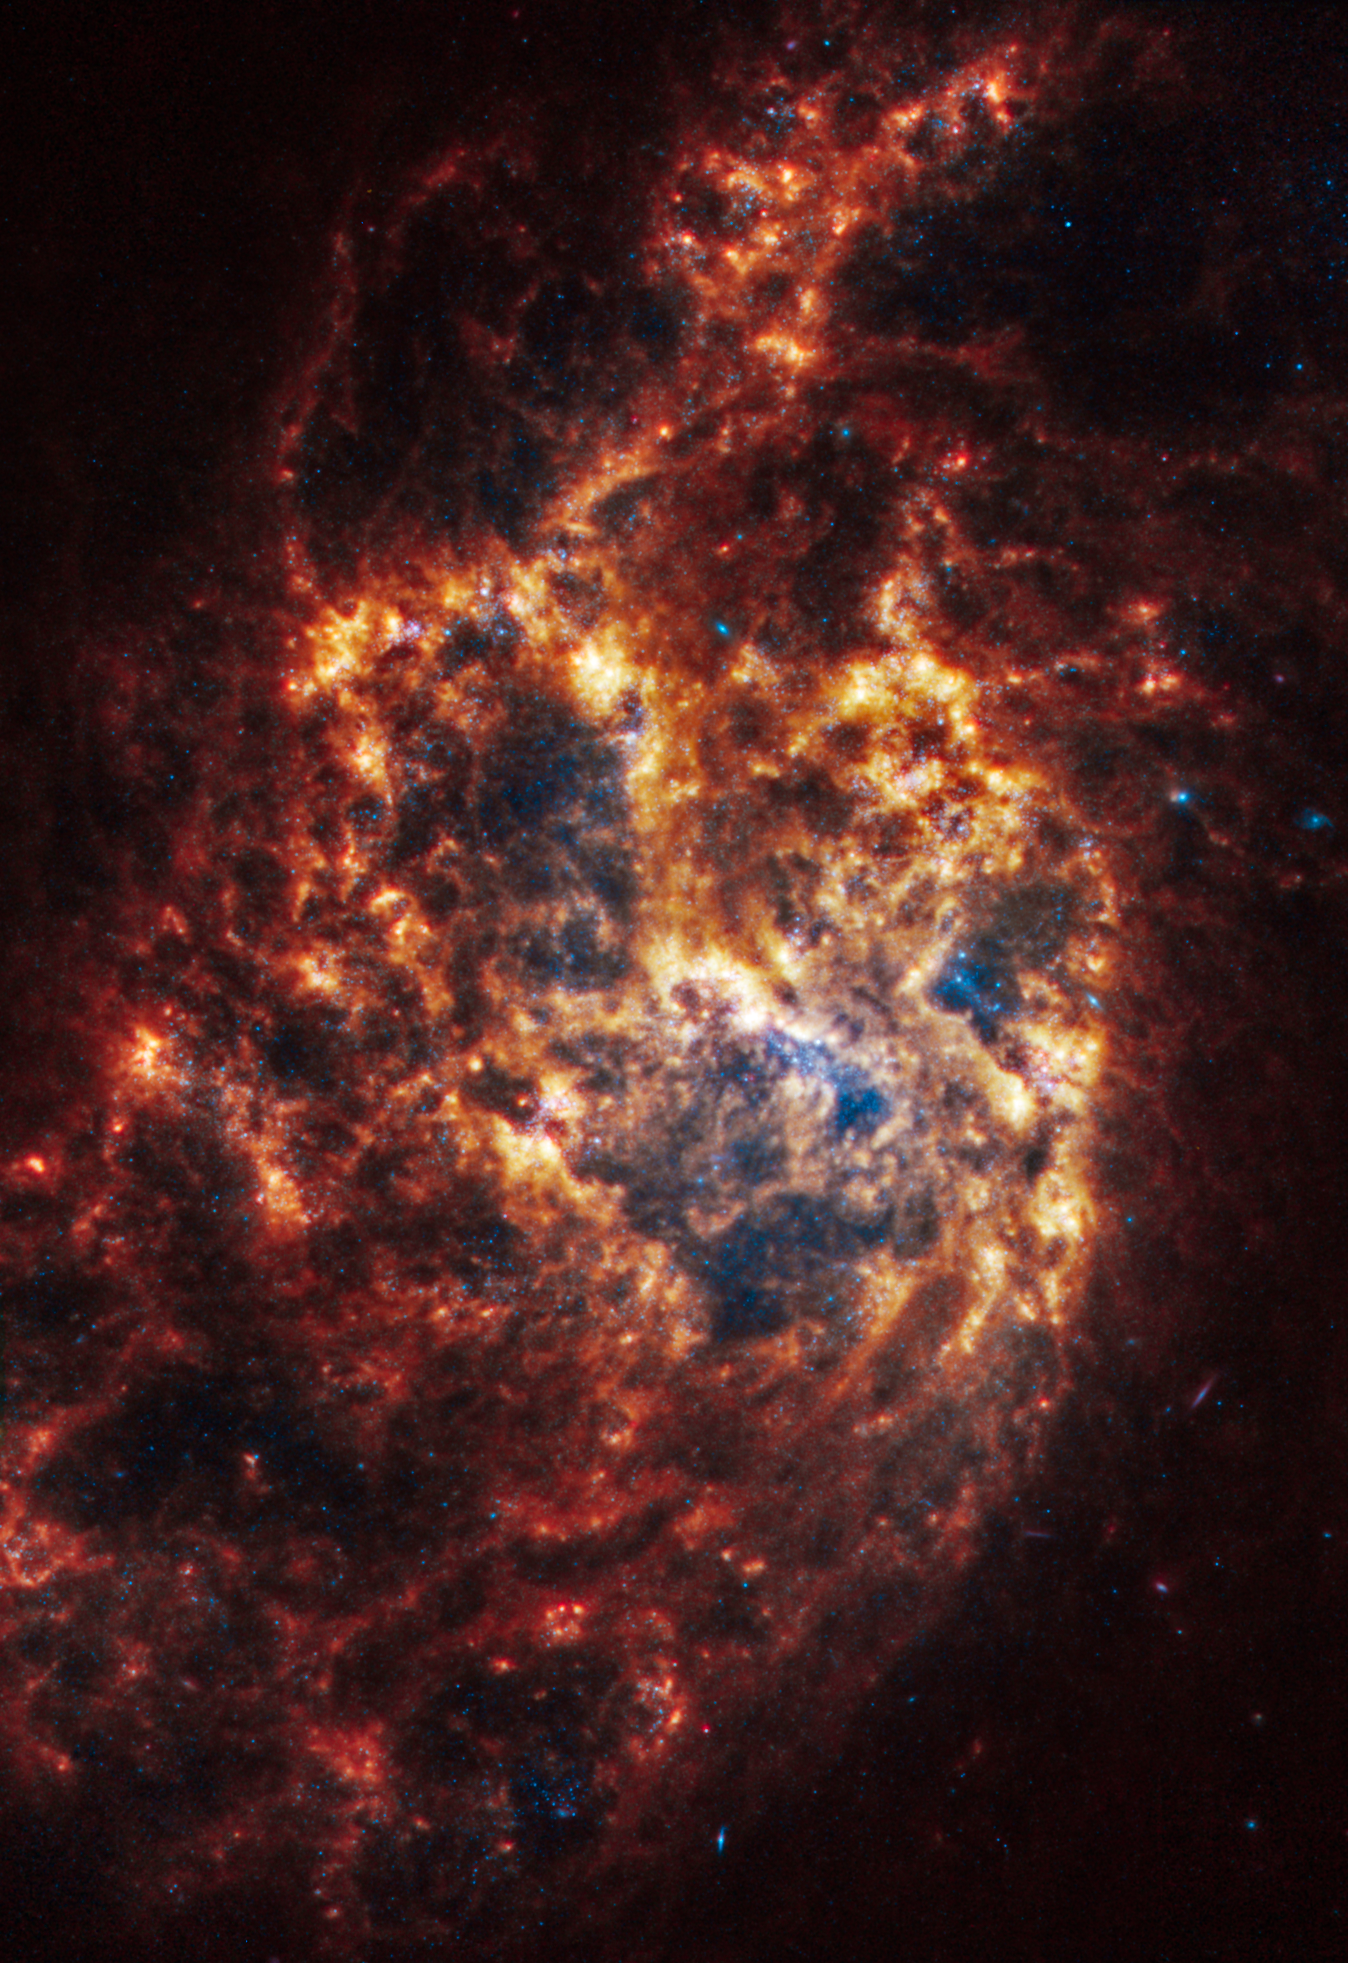 La galaxia espiral NGC 1385, ubicada a 30 millones de años luz en la constelación de Fornax (El Horno), revela su majestuosidad con sus brazos espirales bien definidos y una estructura central prominente.